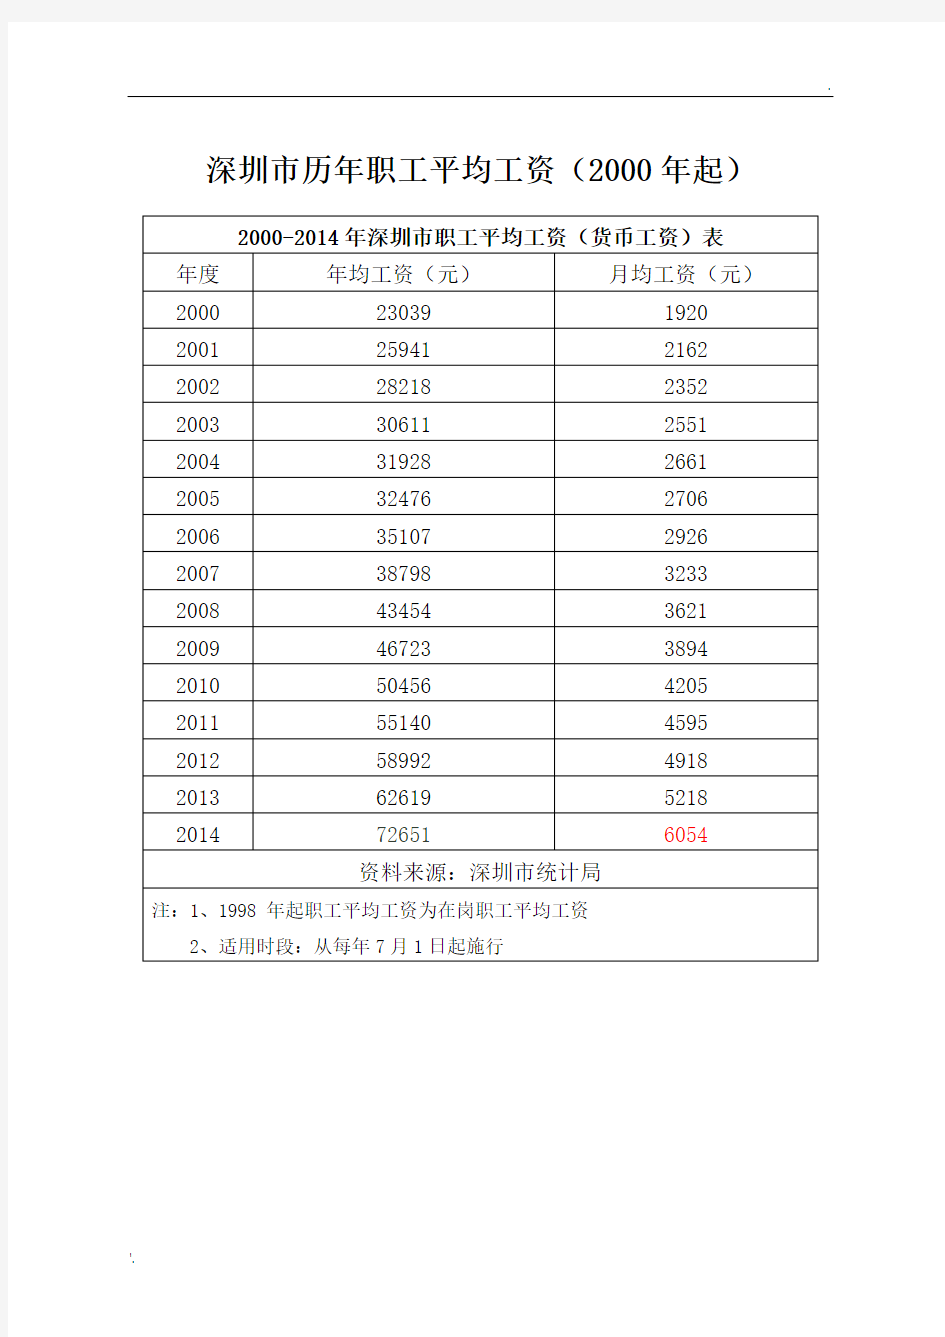 深圳市历年职工平均工资(2000年起)